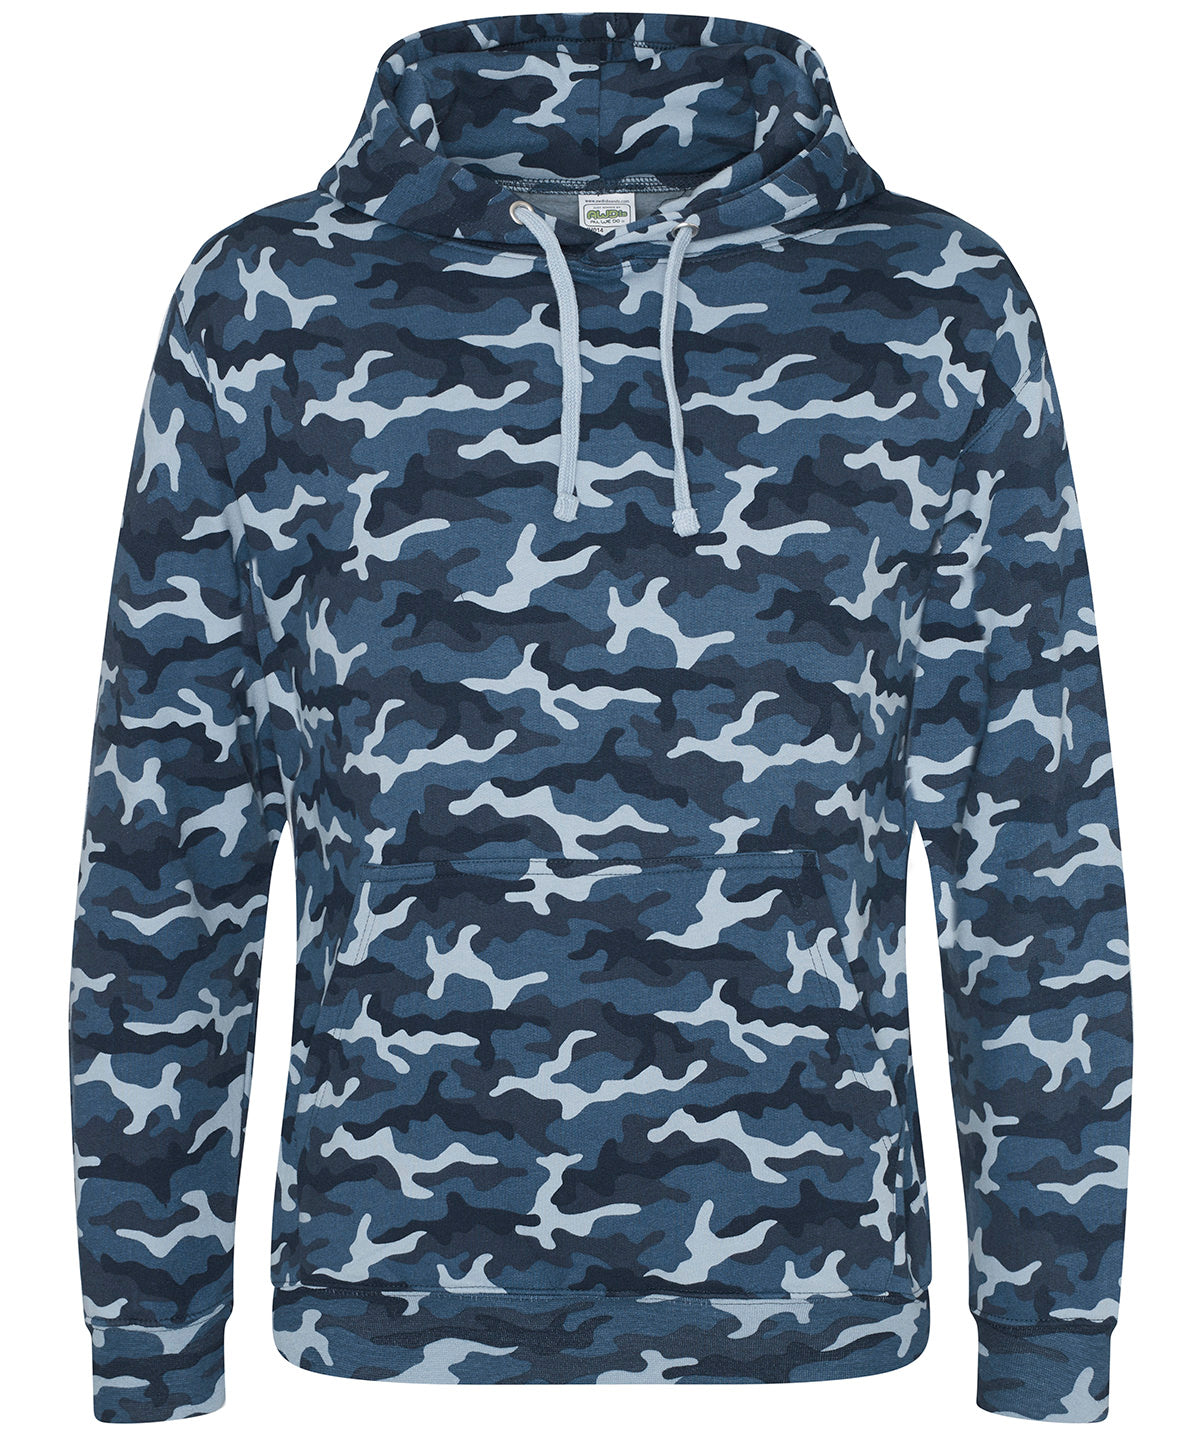 Personalised Hoodies - Camouflage AWDis Just Hoods Camo hoodie